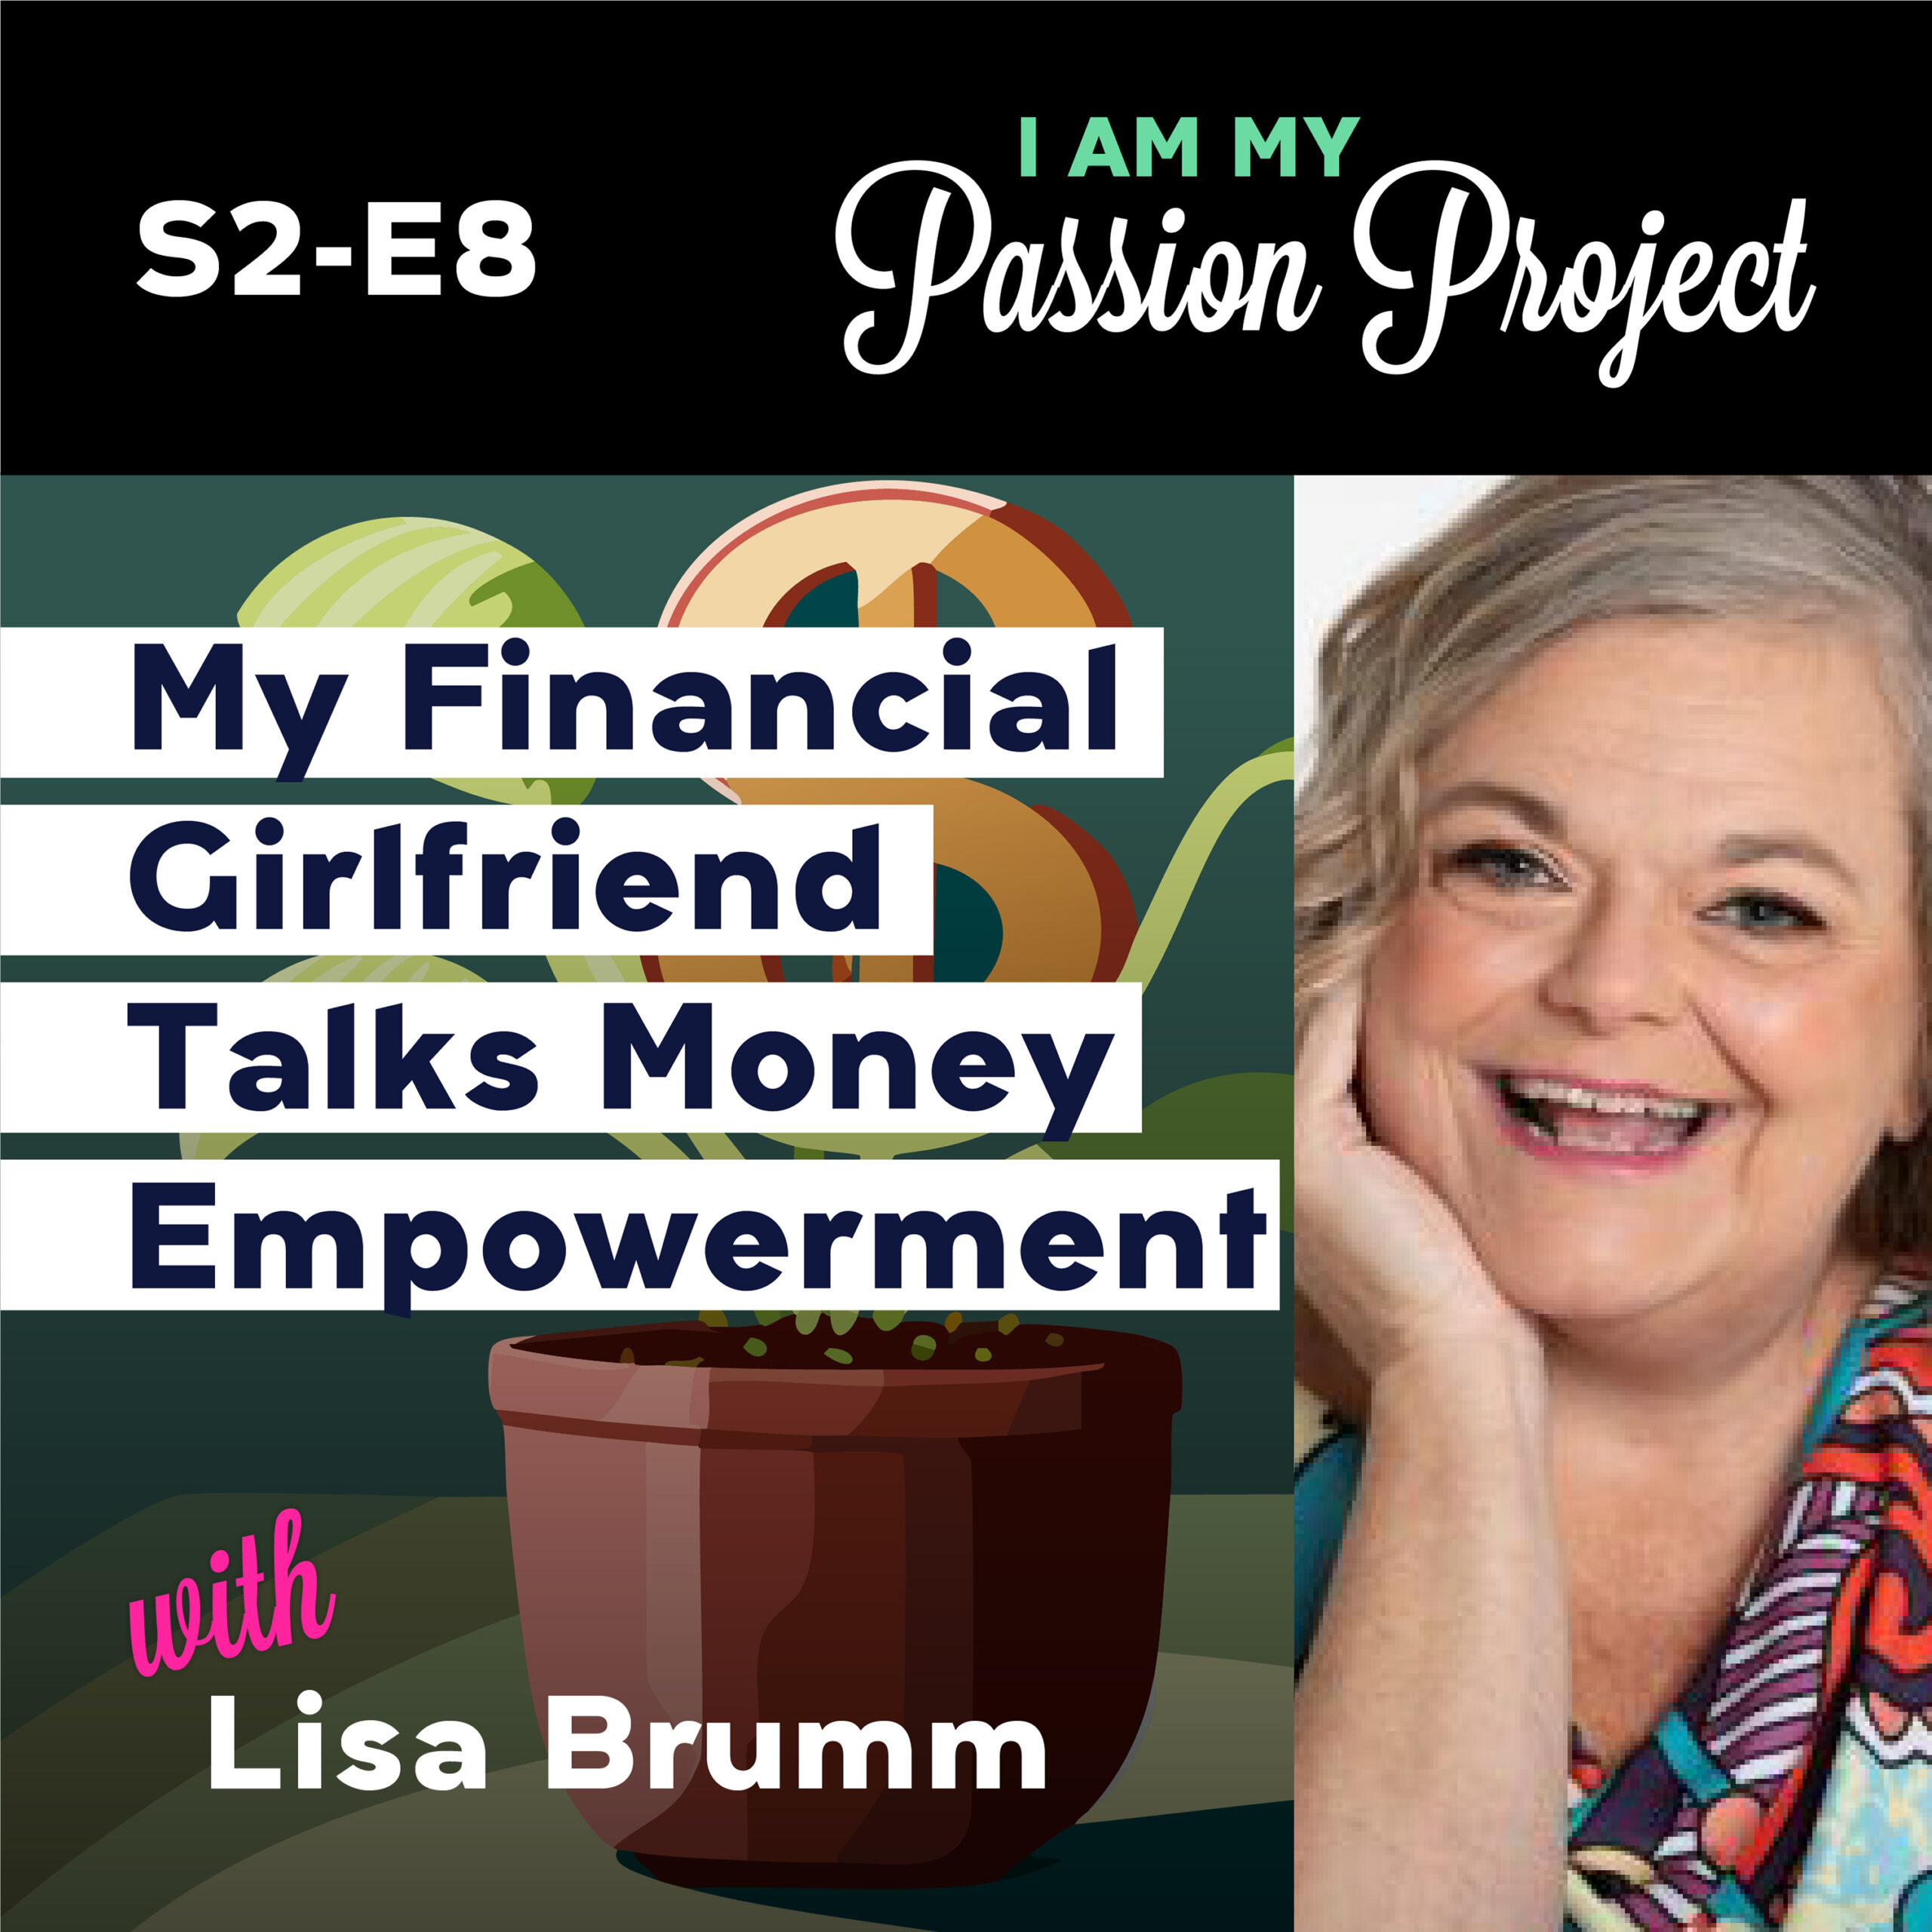 My Financial Girlfriend Talks Money Empowerment for Women with Lisa Brumm